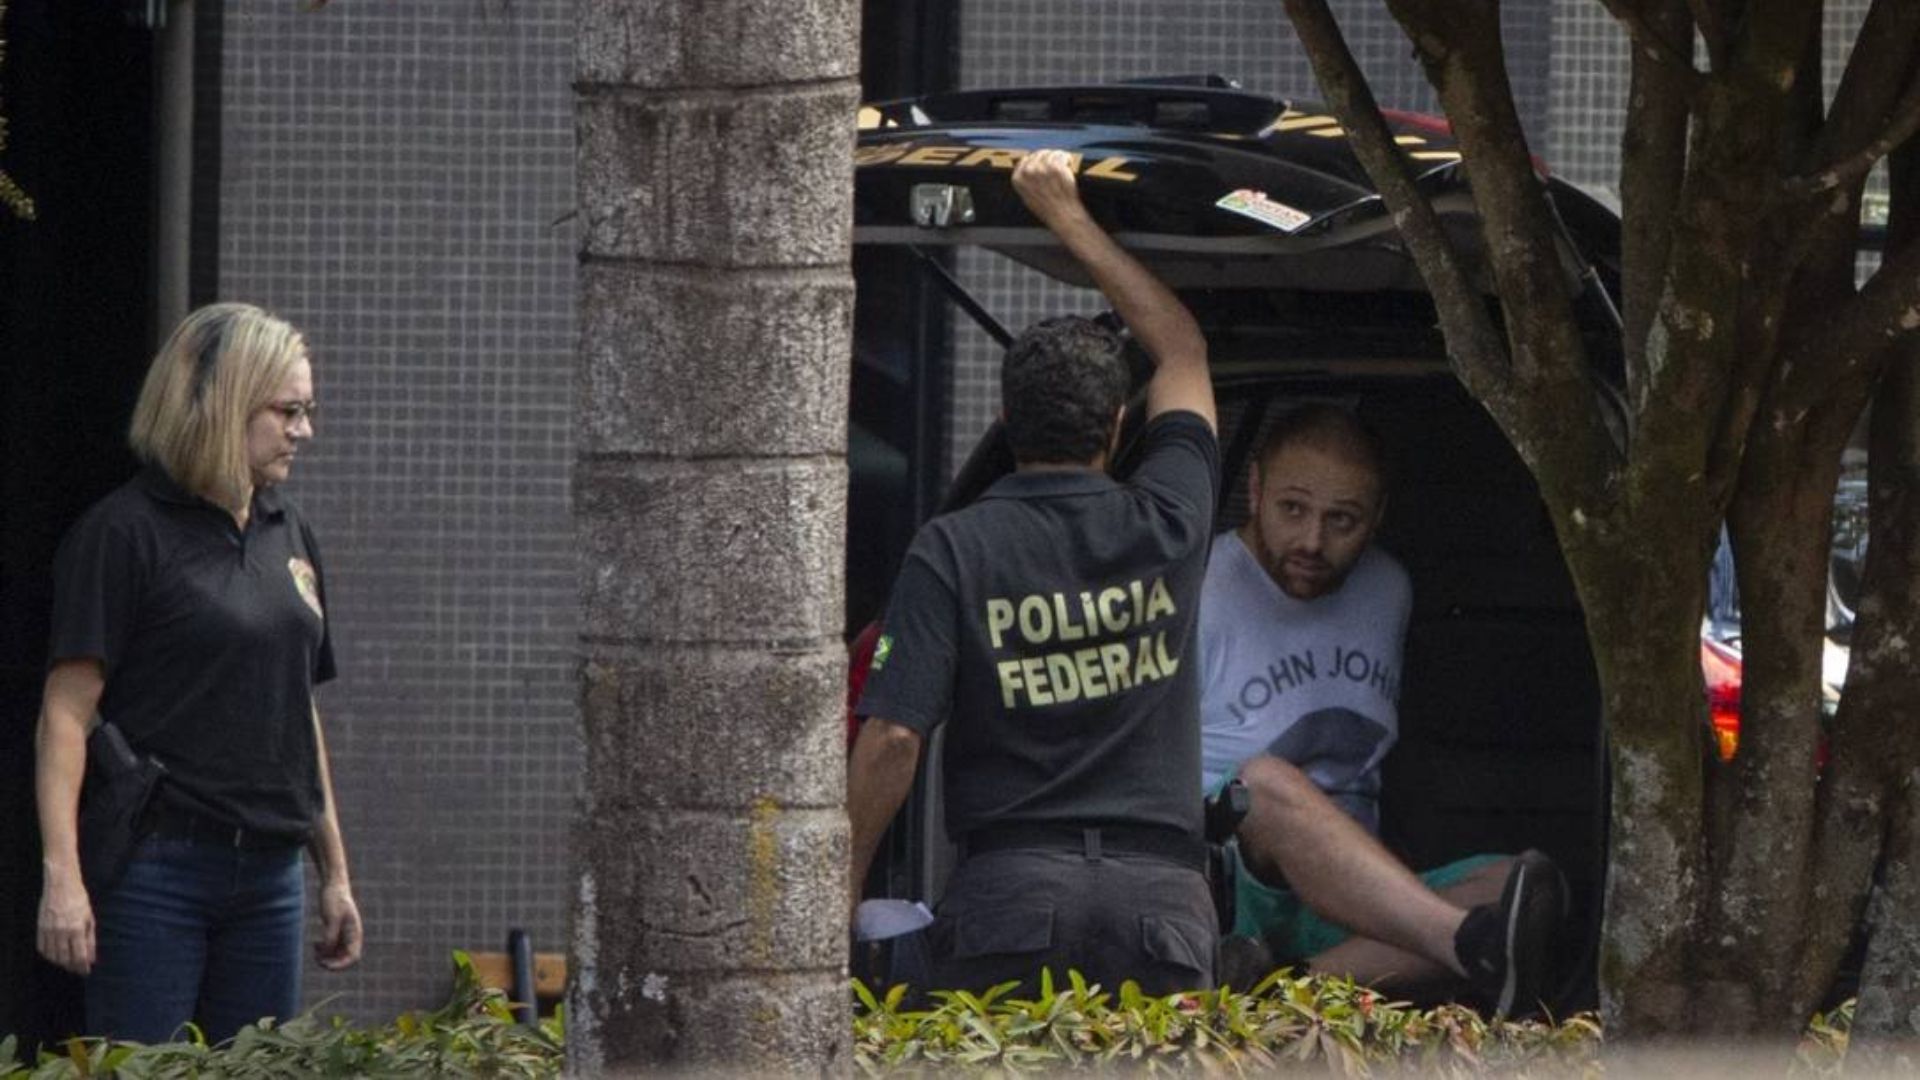 Momento en el que la policía federal brasileña detuvo al supuesto hacker. (Cortesía: Agência O Globo)